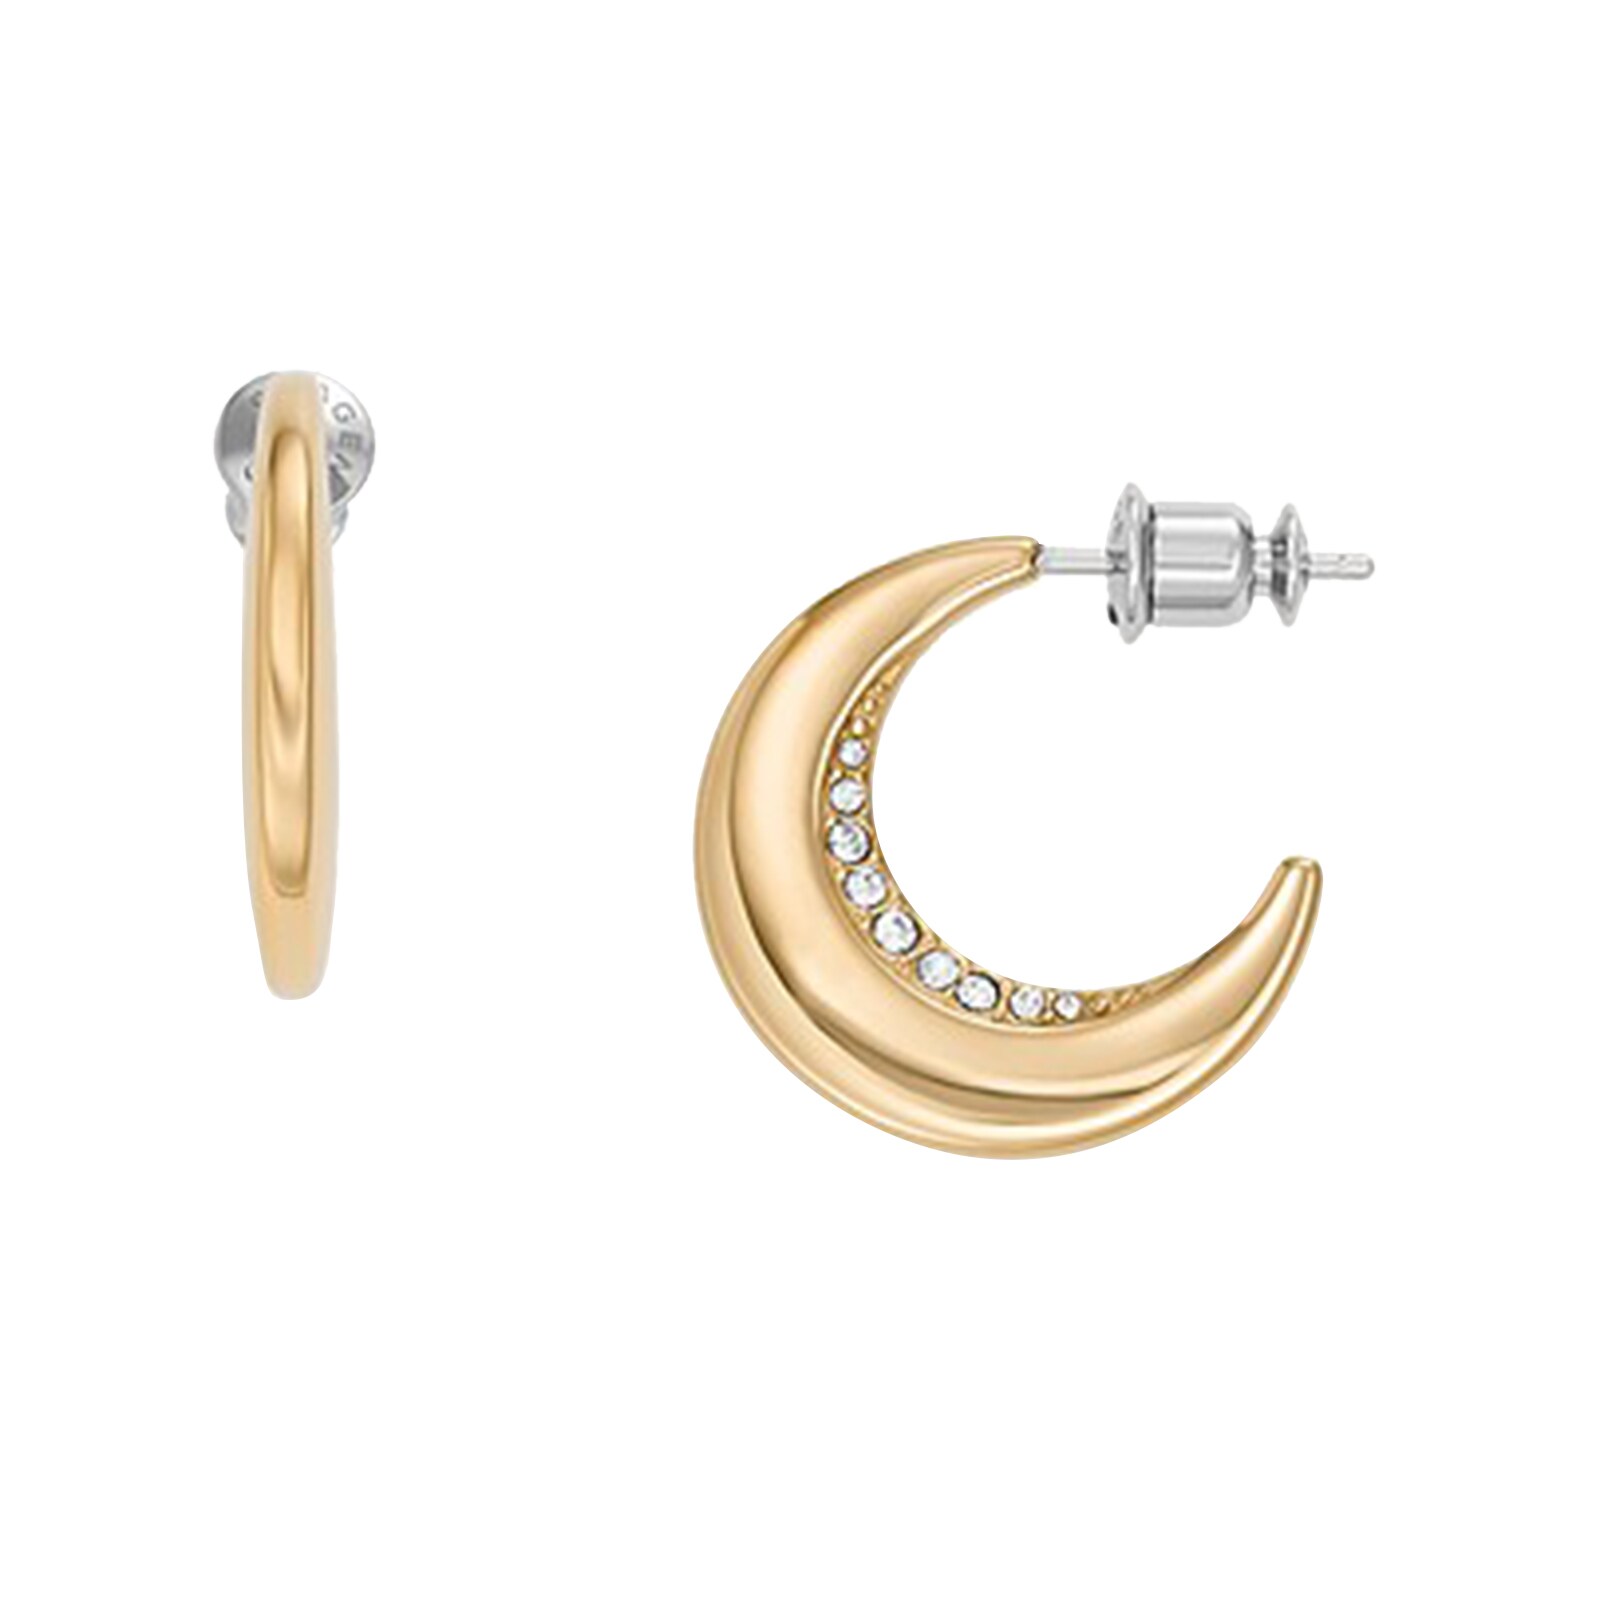 Kariana Gold Tone Stainless Steel Hoop Earrings